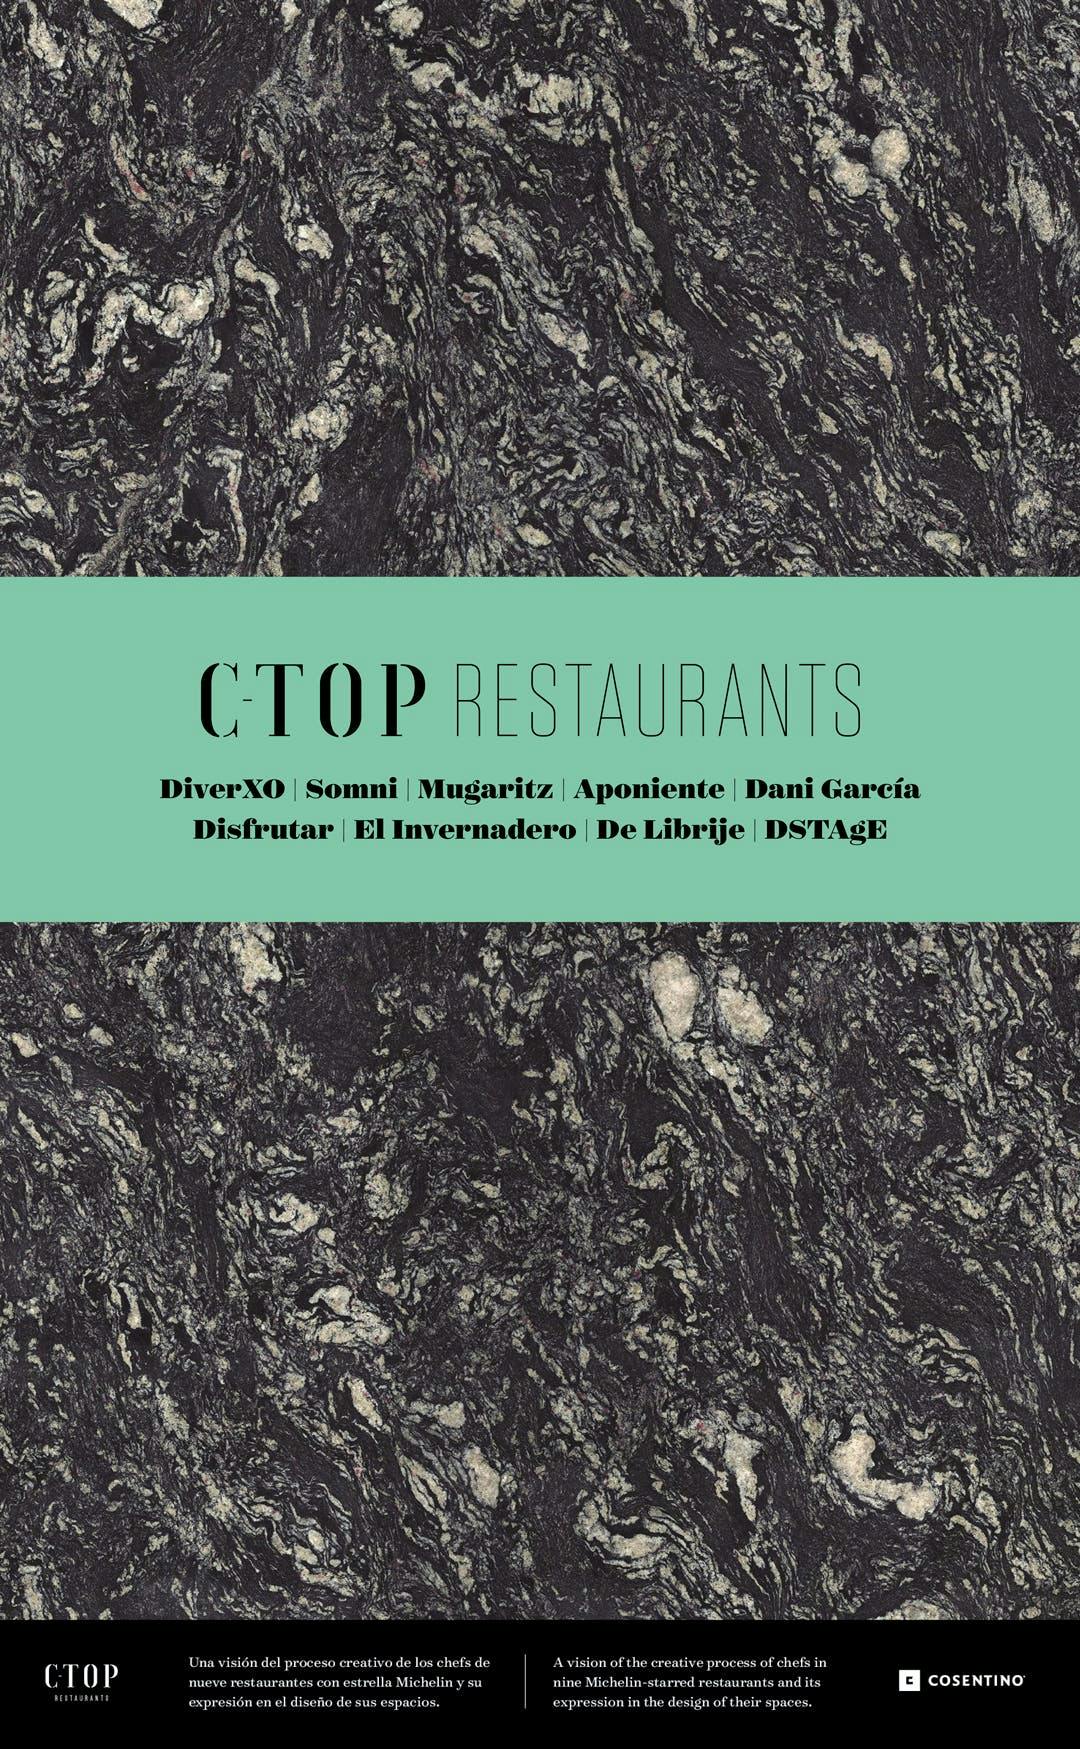 Imagem número 32 da actual secção de C-Top Restaurants da Cosentino arrecada prémio Gold nos The International Business Awards (Stevie) con la publicación “C-Top Restaurants” da Cosentino Portugal